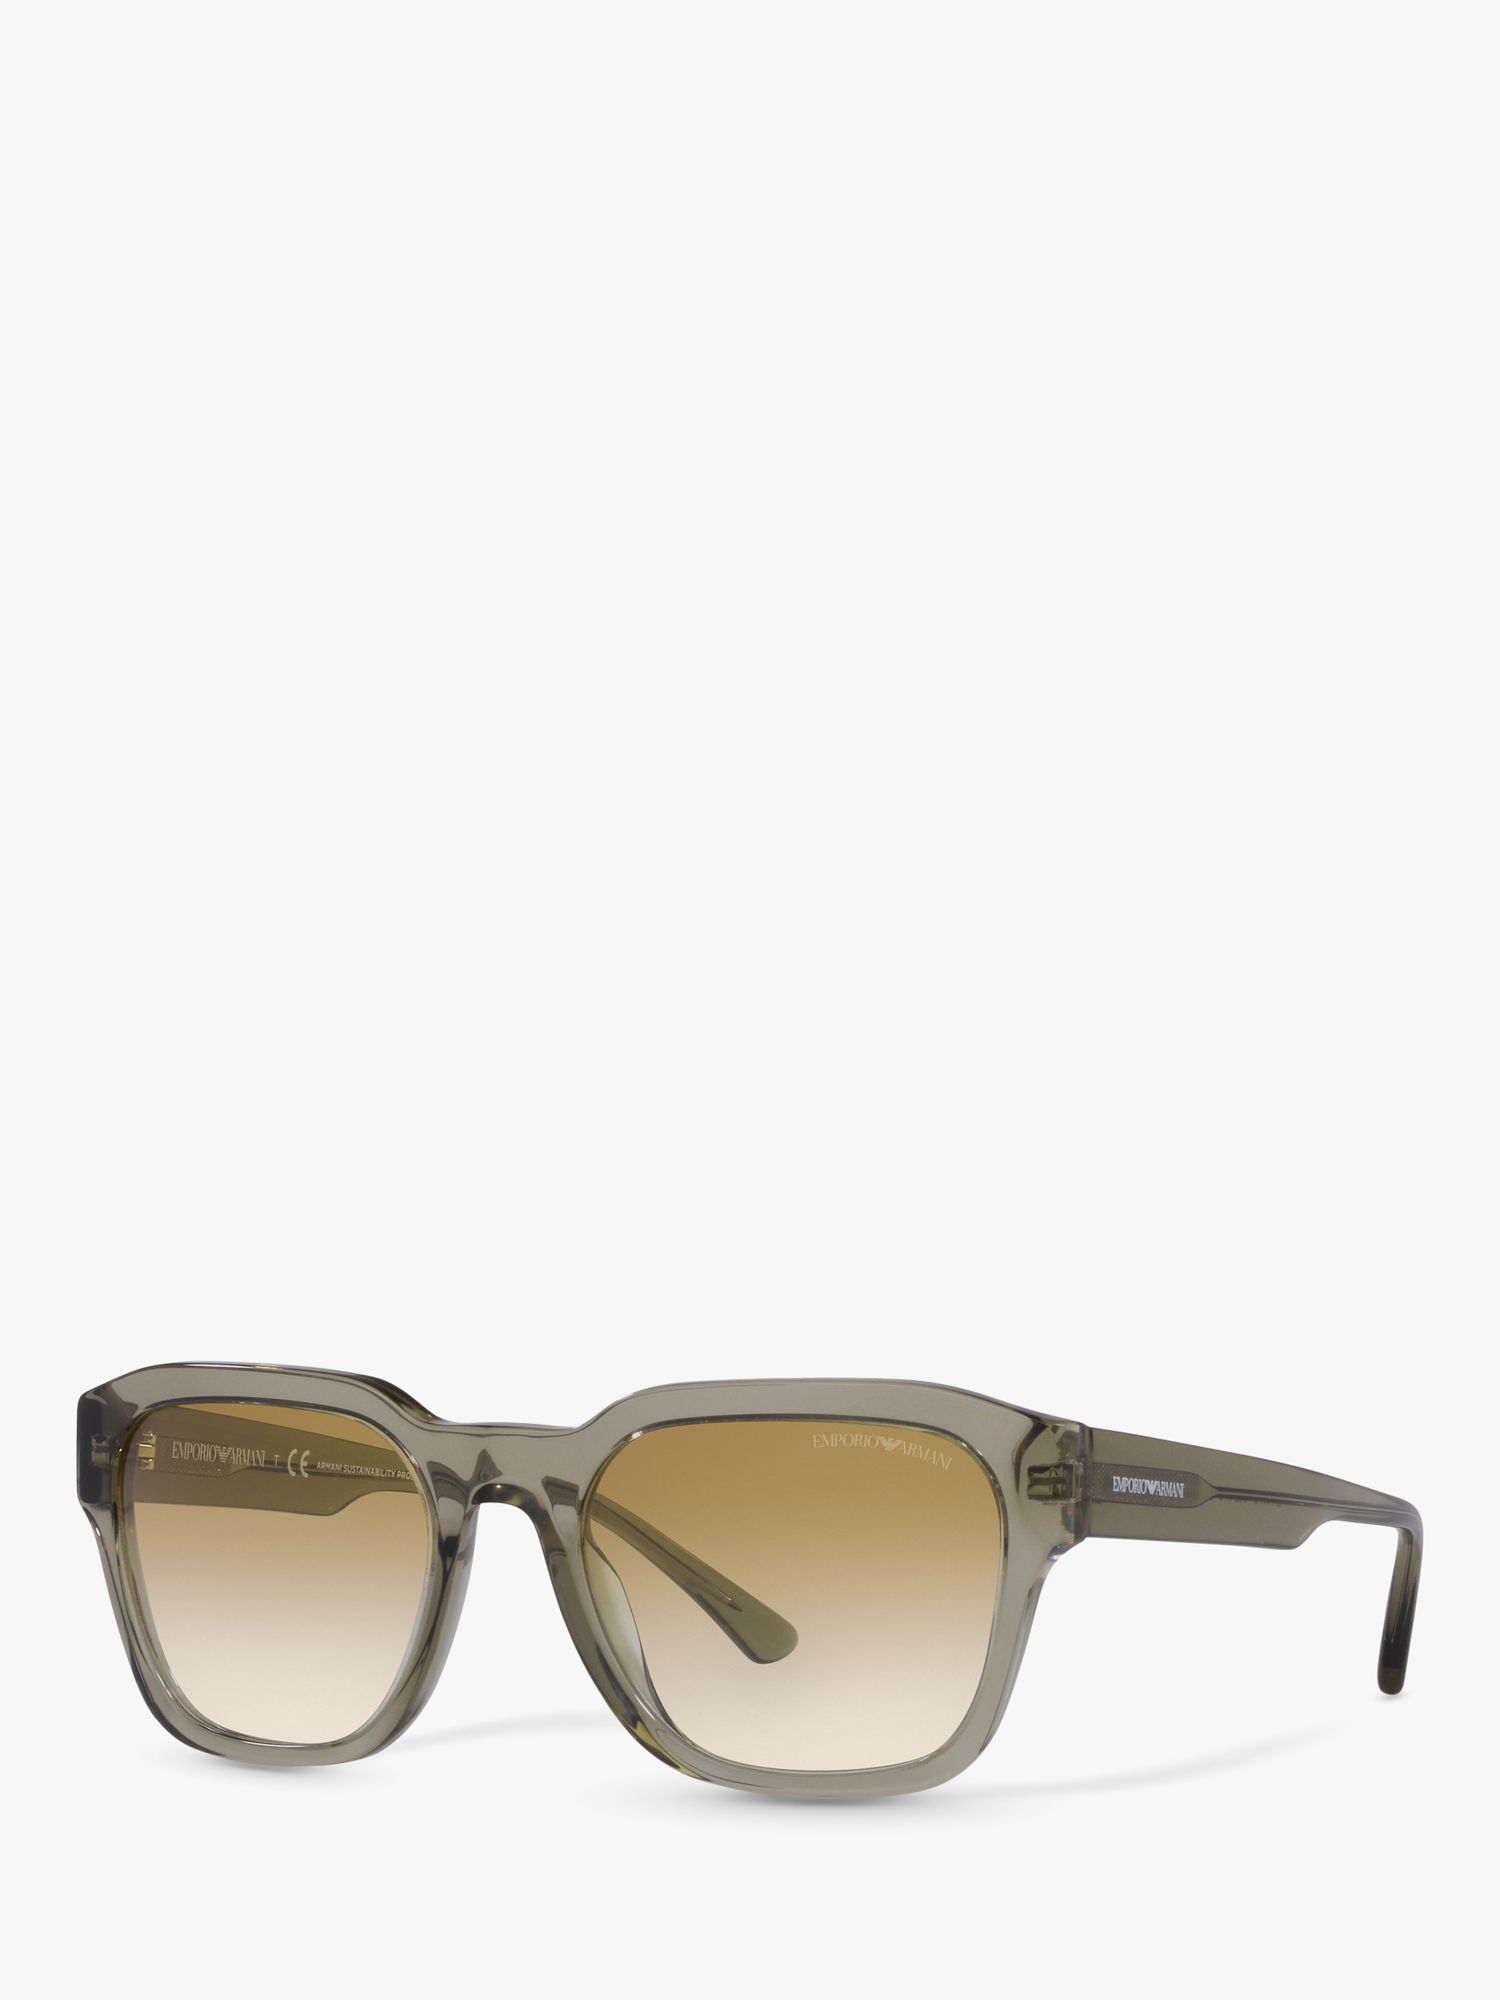 Emporio Armani EA4175 Мужские квадратные солнцезащитные очки, прозрачный зеленый/коричневый с градиентом